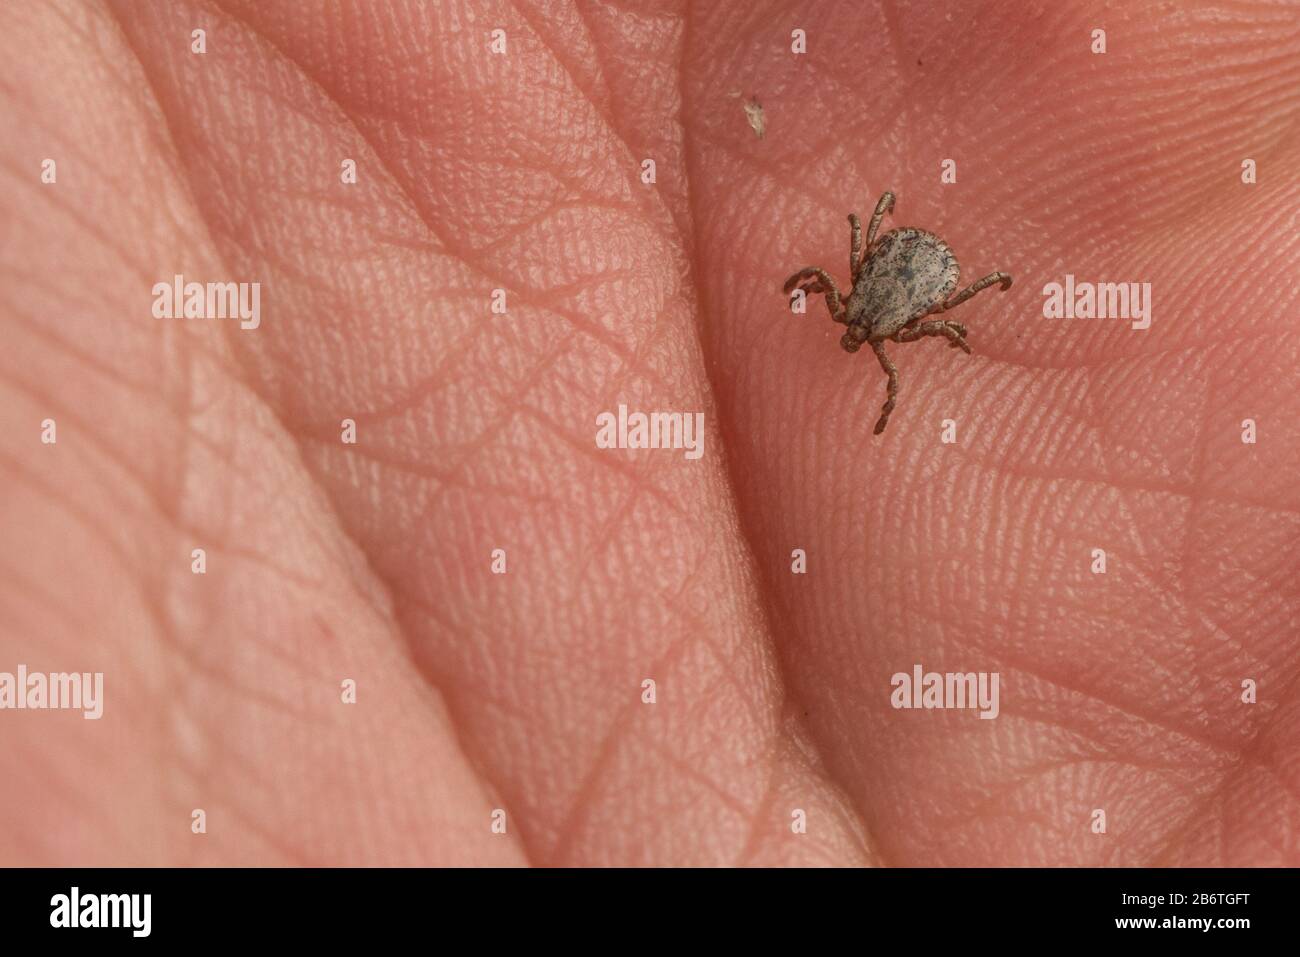 Une petite tique (Dermacentor occidentalis), un vecteur de maladie rampant sur la main des photographes à Berkeley, en Californie. Banque D'Images